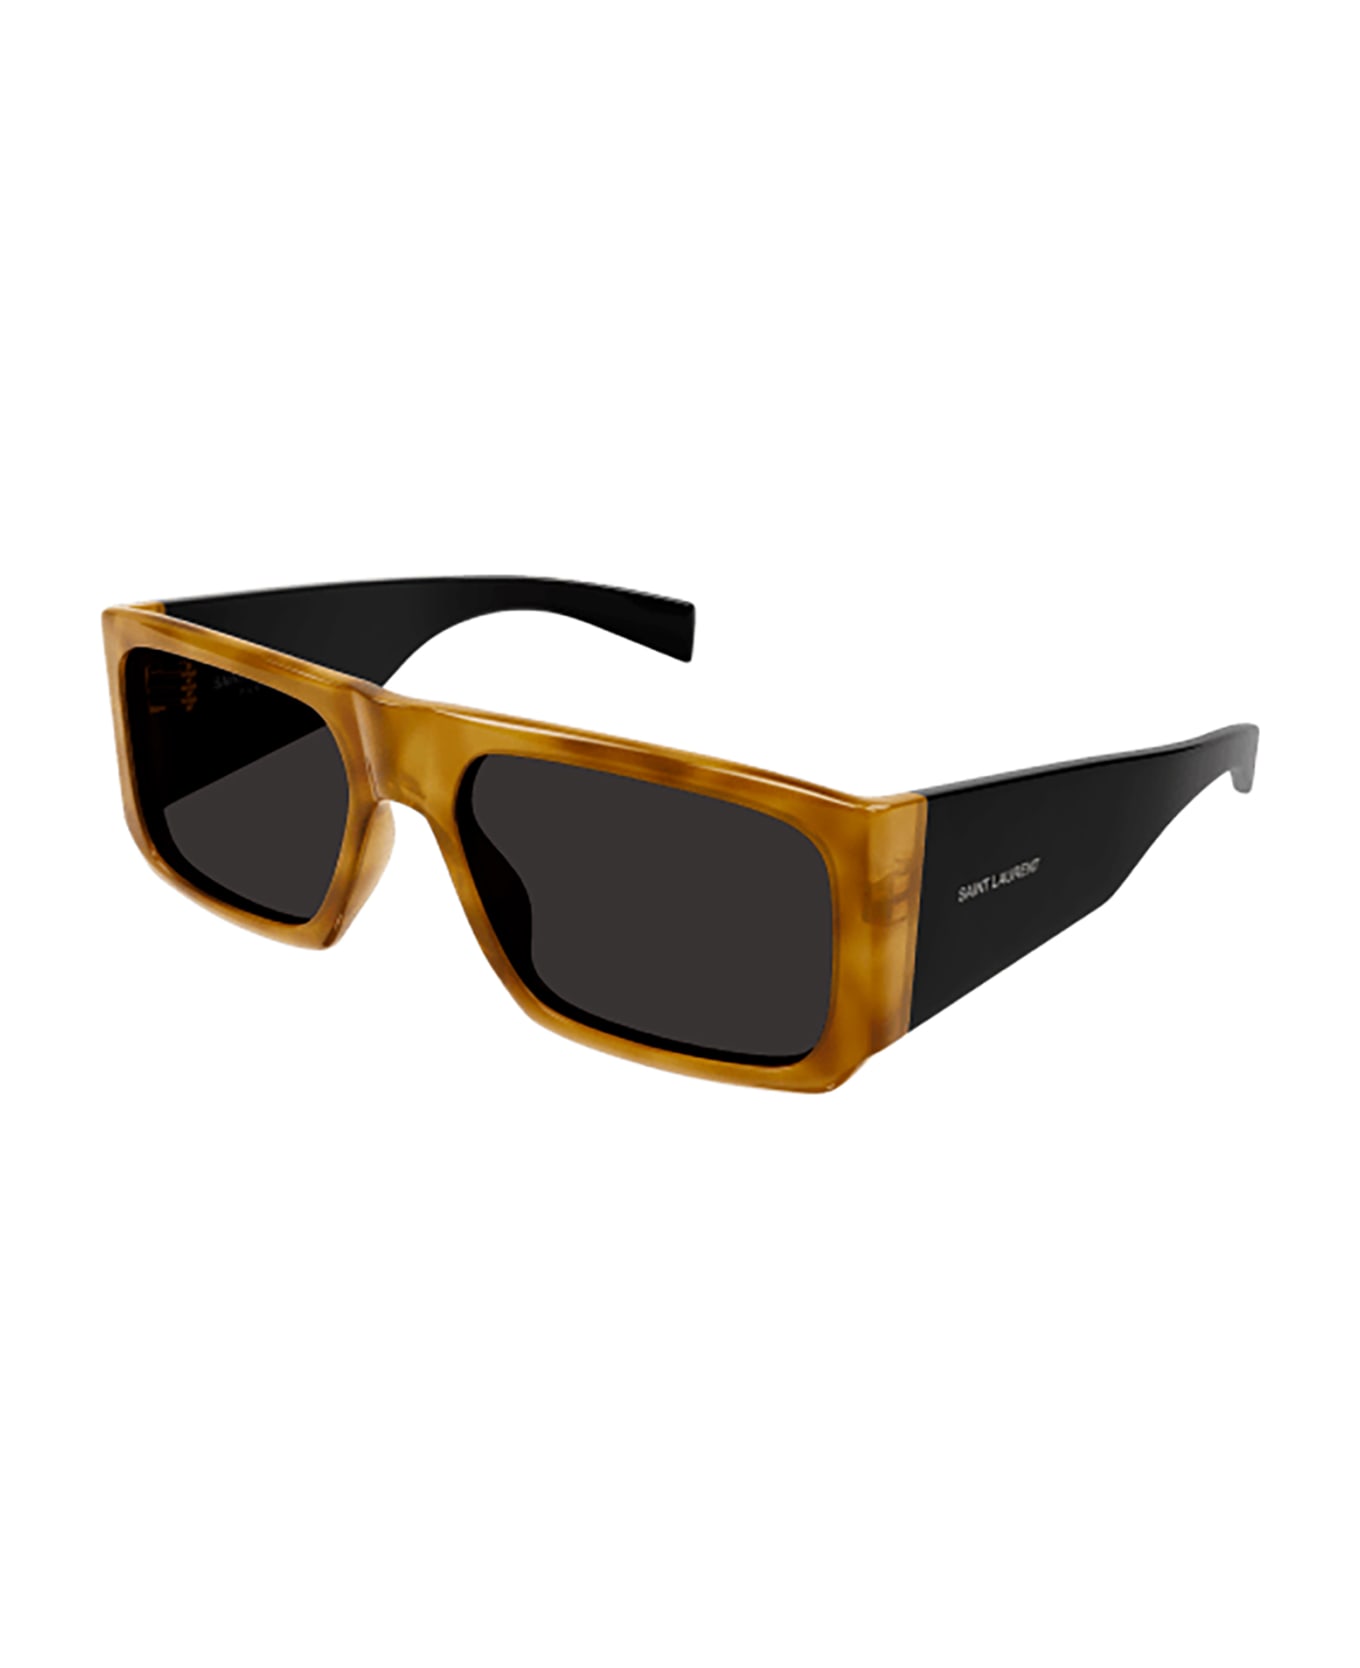 Saint Laurent Eyewear SL 635 ACETATE Sunglasses - Havana Black Black サングラス